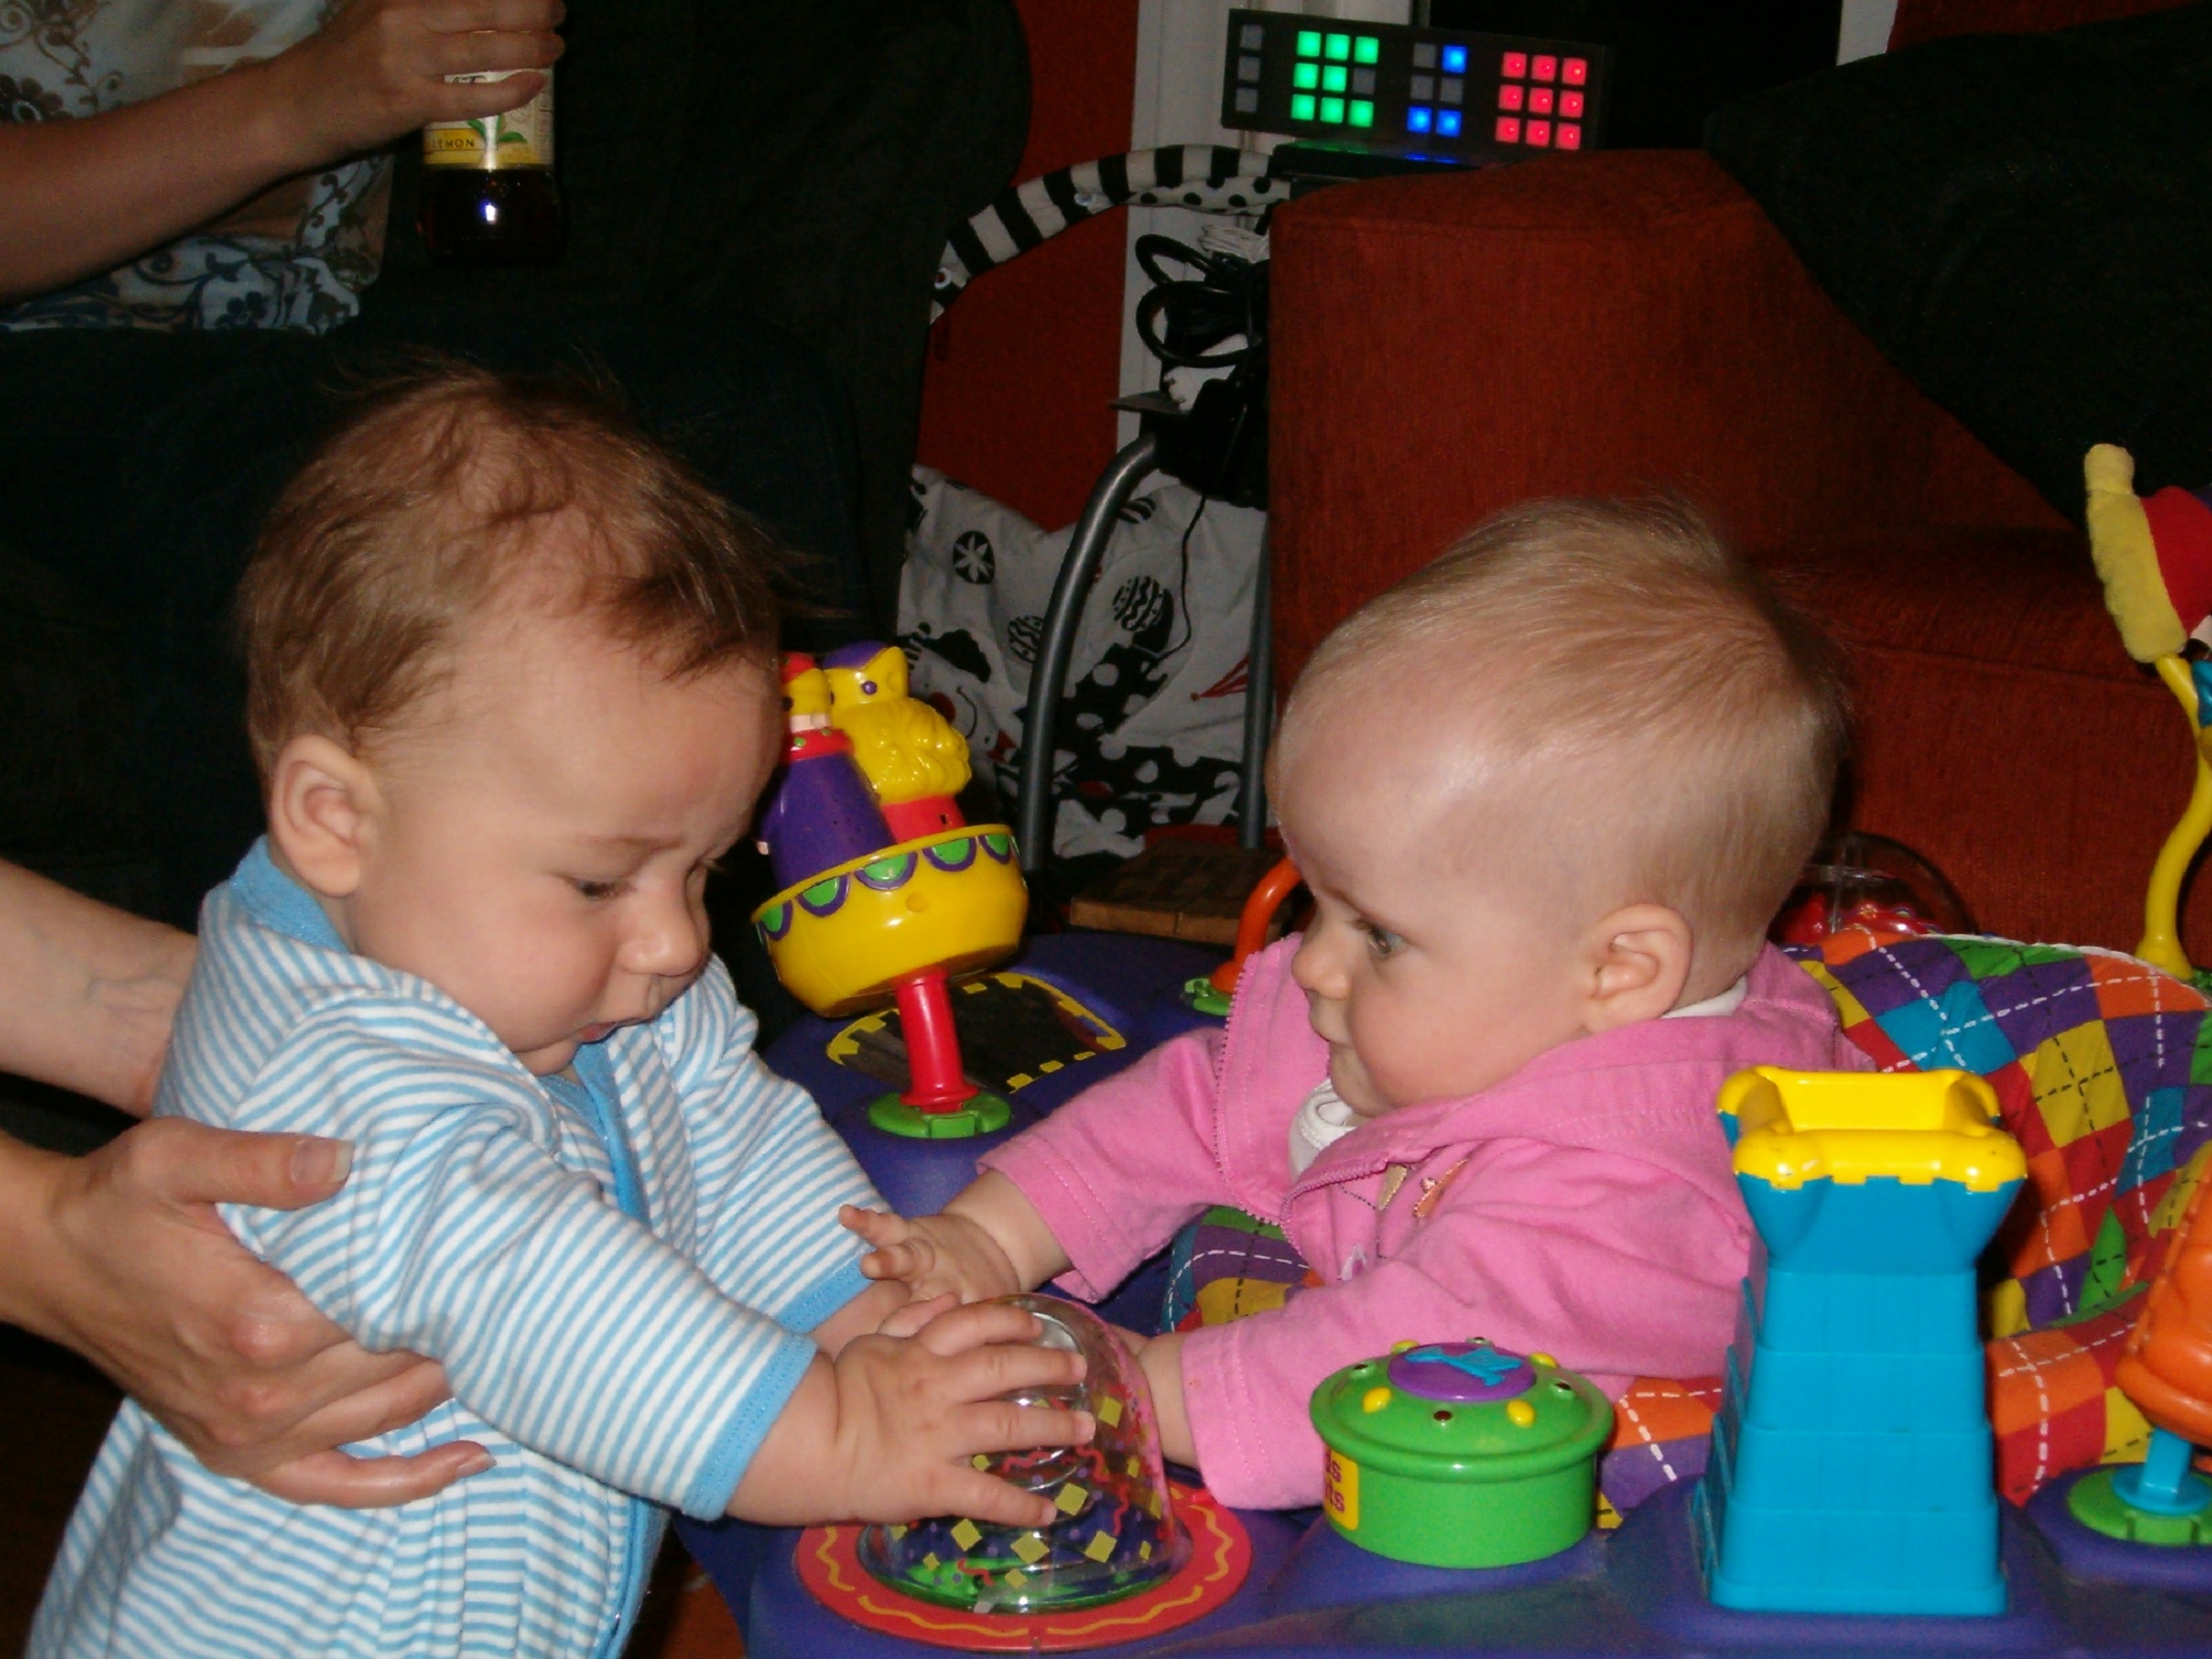 Los bebés ya empiezan a buscar nuevas maneras de comunicarse con los demás. Imagen: Ted Johnson. Fuente: Flickr.